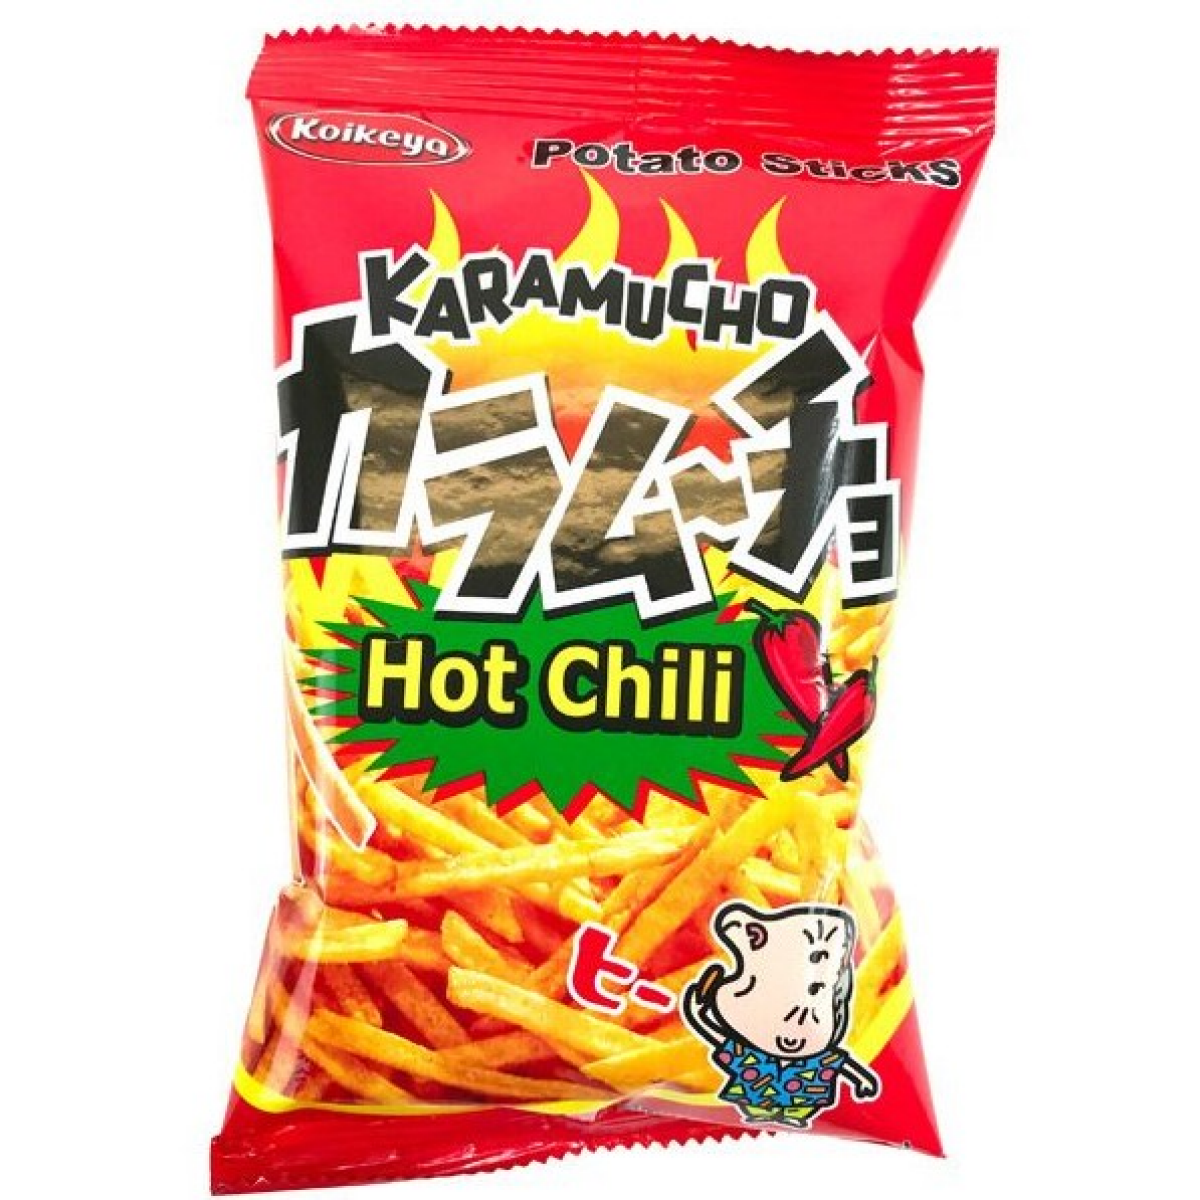 Koikeya Karamucho Potato Sticks, Hot Chili, 3.5 oz